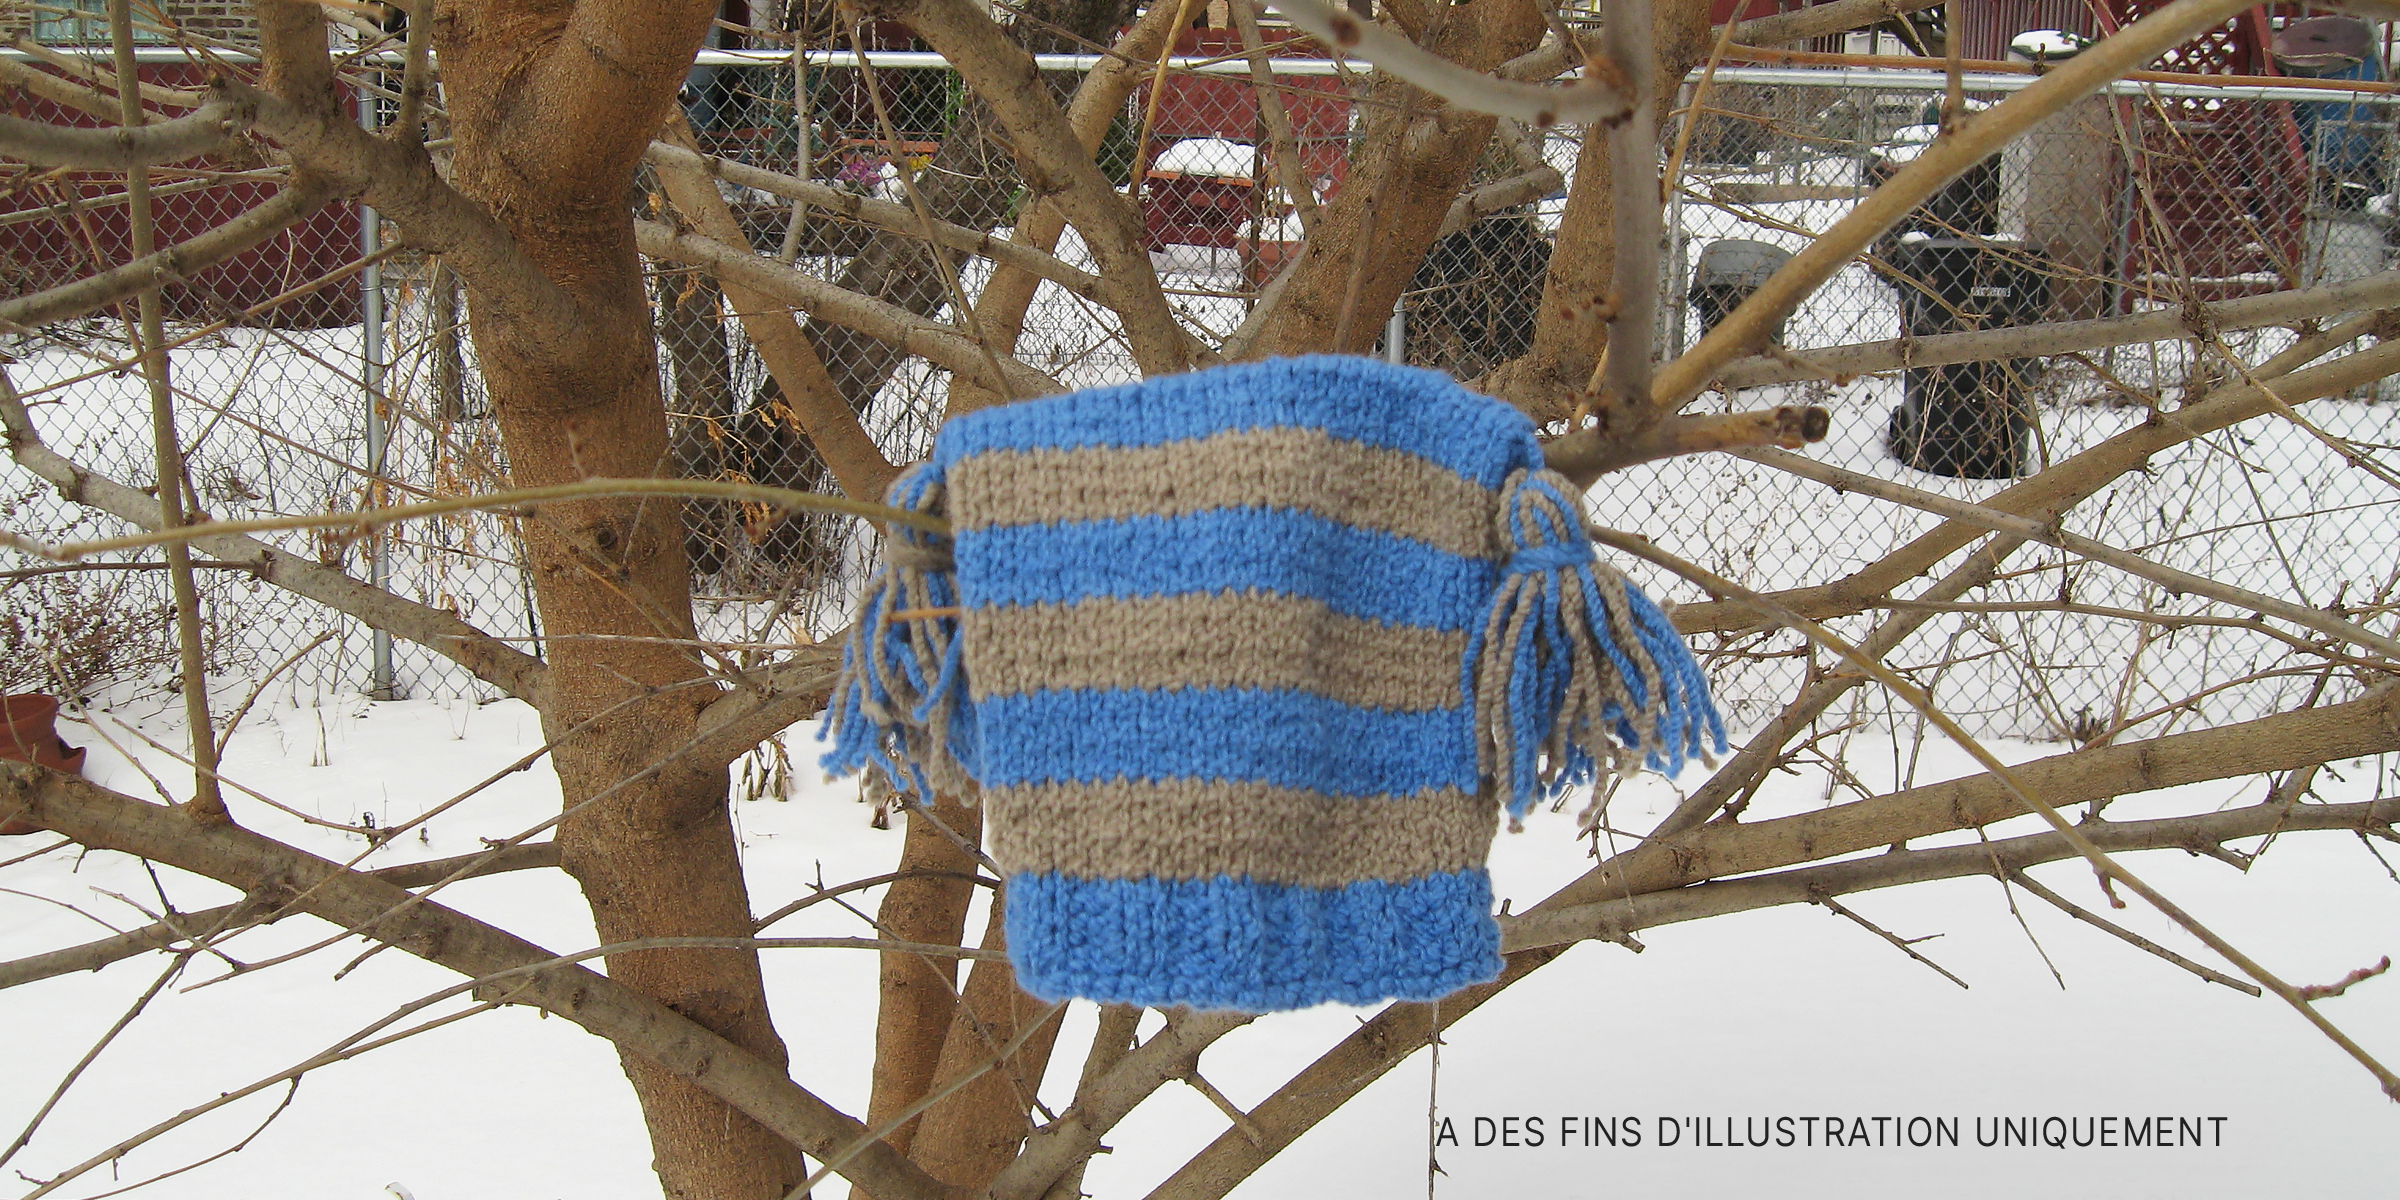 Un bonnet tricoté est accroché à un arbre avec de la neige en arrière-plan | Source : Flickr / moonrat42 (CC BY-SA 2.0)